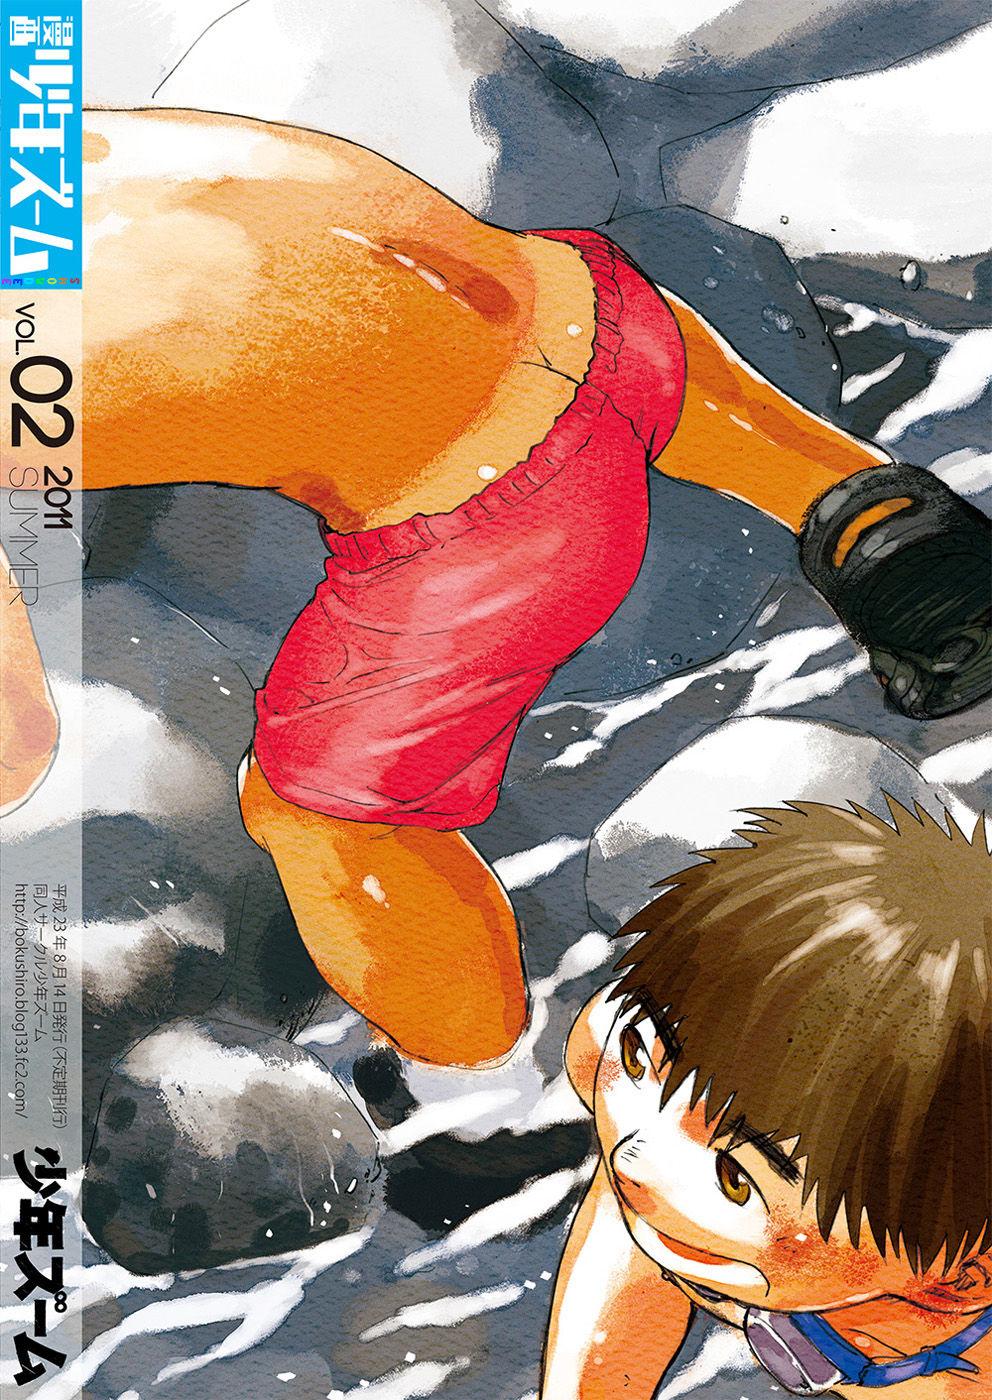 Hot Girl Fucking Manga Shounen Zoom Vol. 02 | 漫畫少年特寫 Vol. 02 Uncut - Picture 2